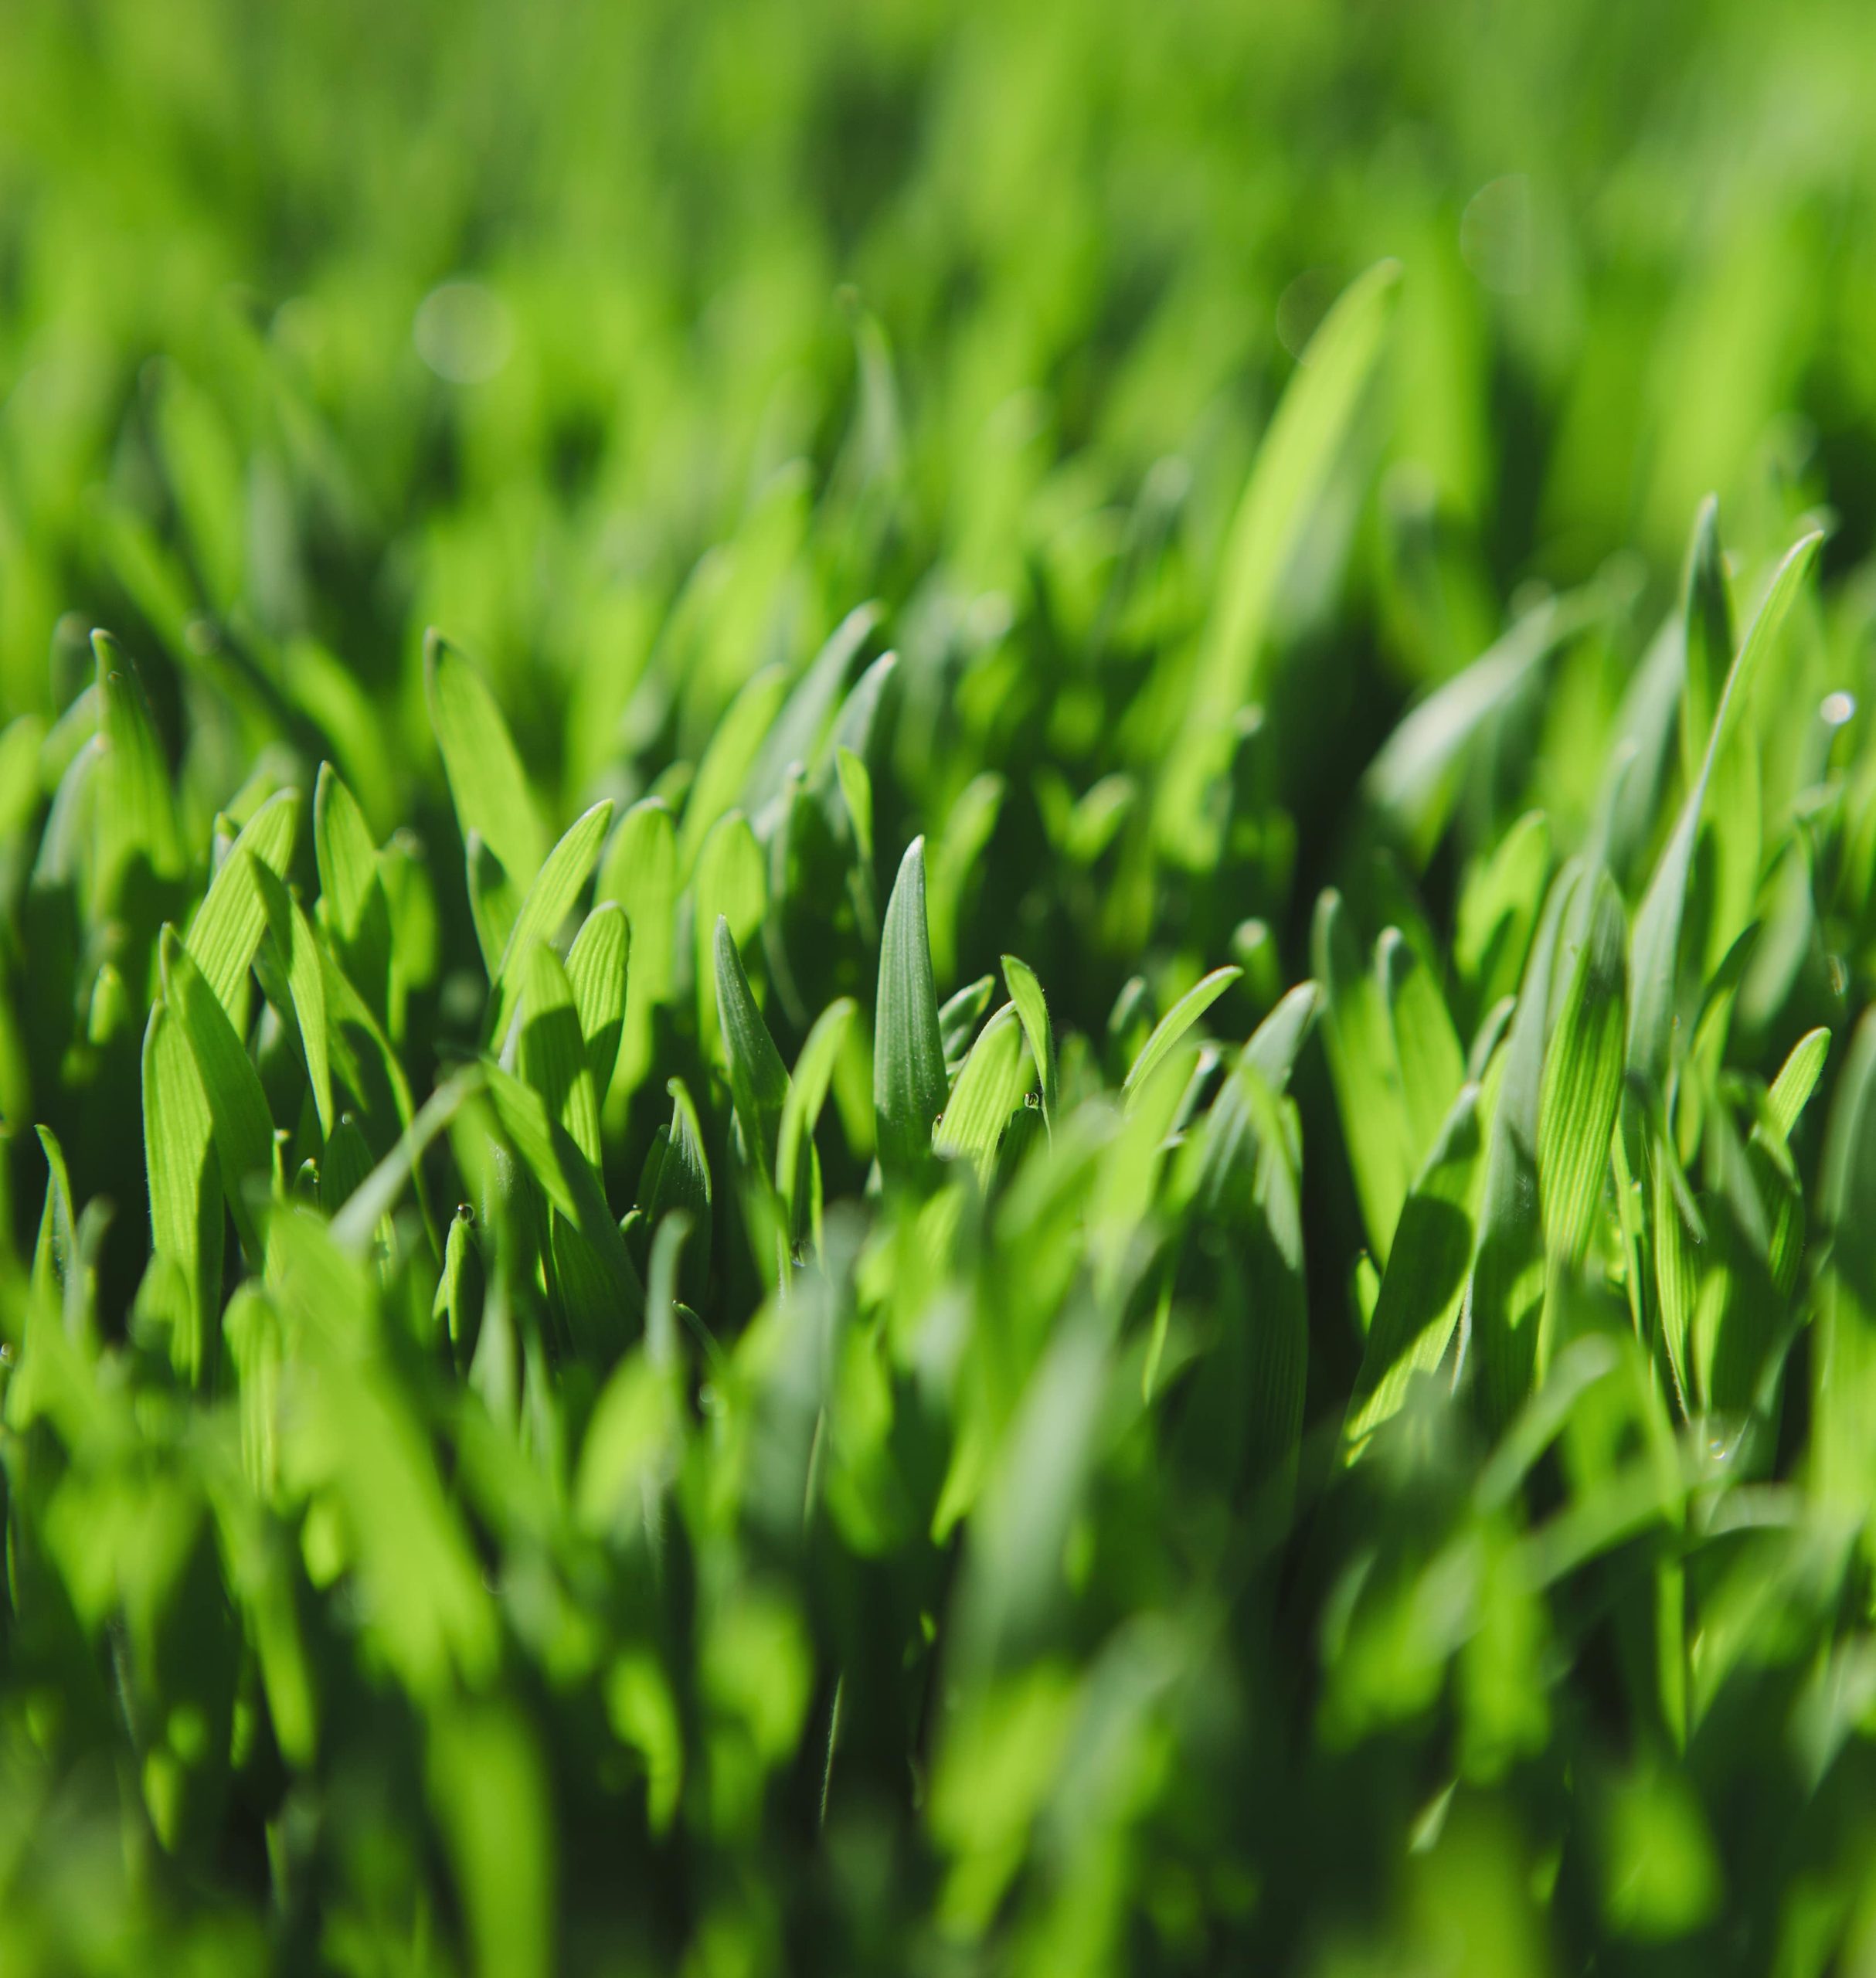 green blades of grass